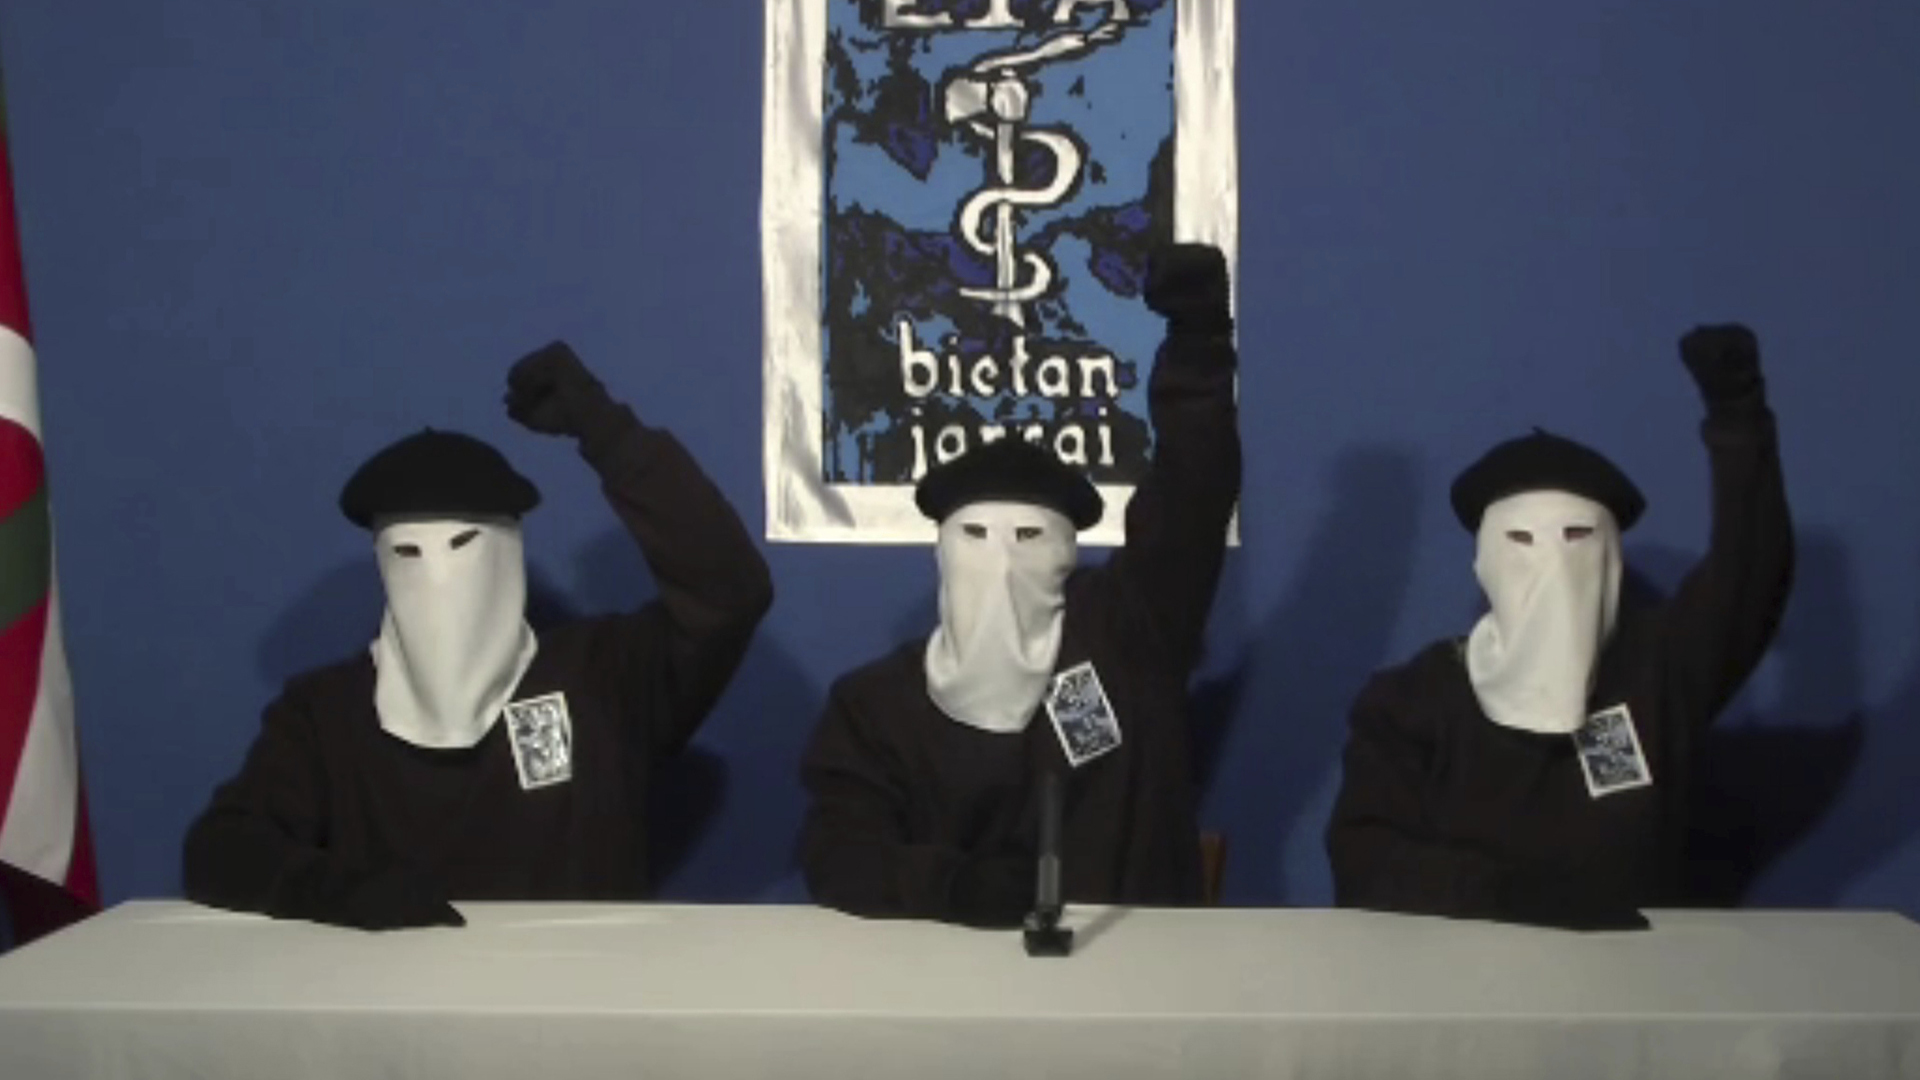 Archivfoto aus dem Oktober 2011 zeigt maskierte ETA-Mitglieder bei einer Pressekonferenz  | Bildquelle: picture alliance / Uncredited/GA